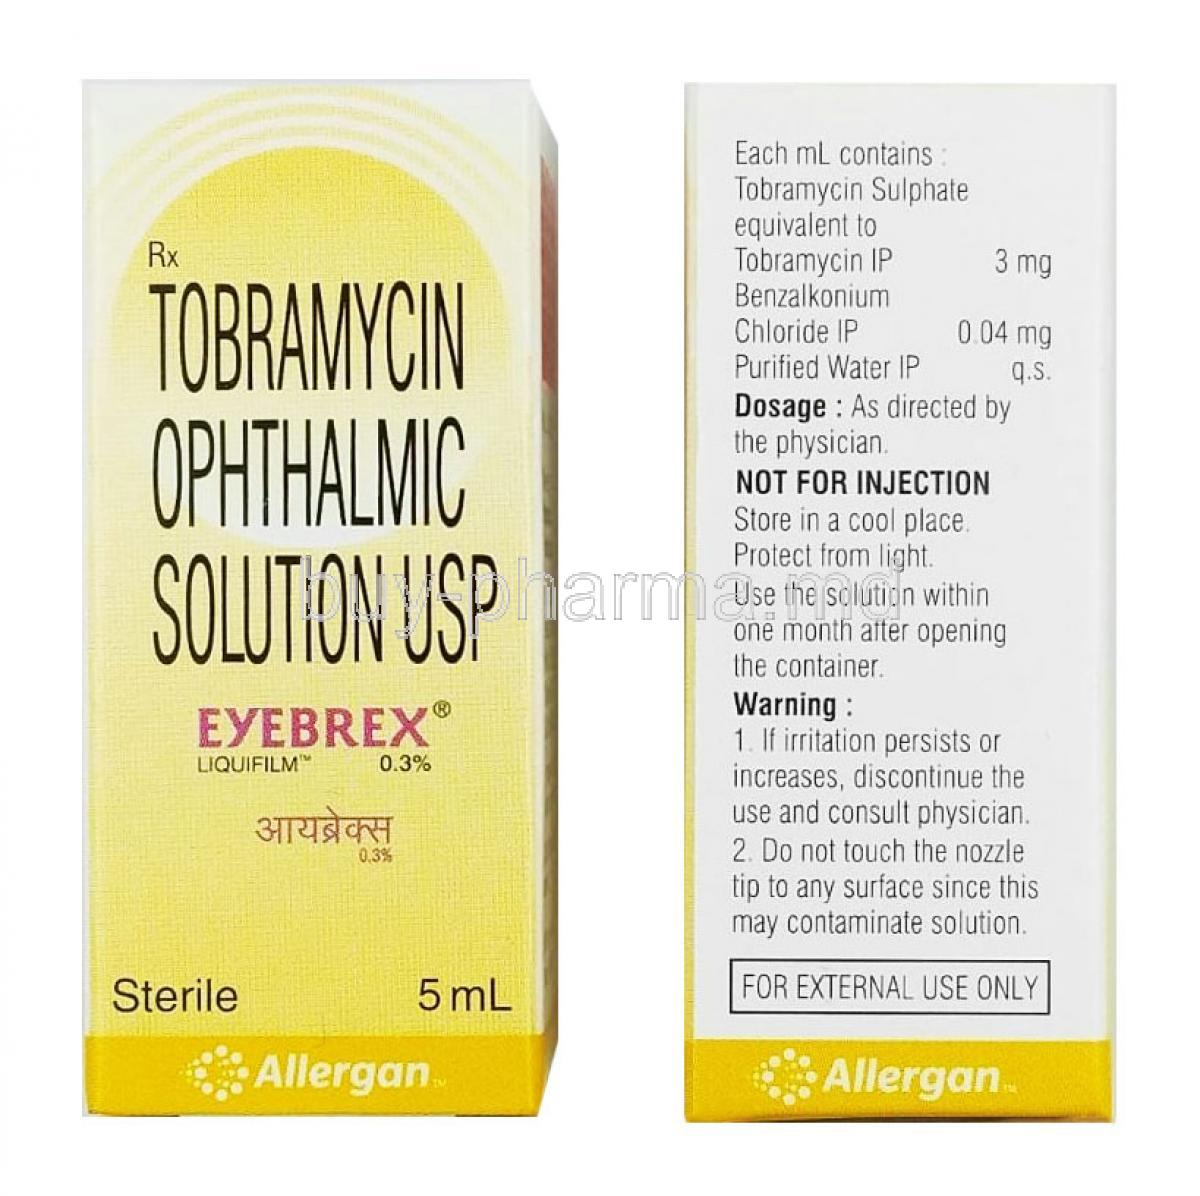 Eyebrex Eye Drops, Tobramycin box